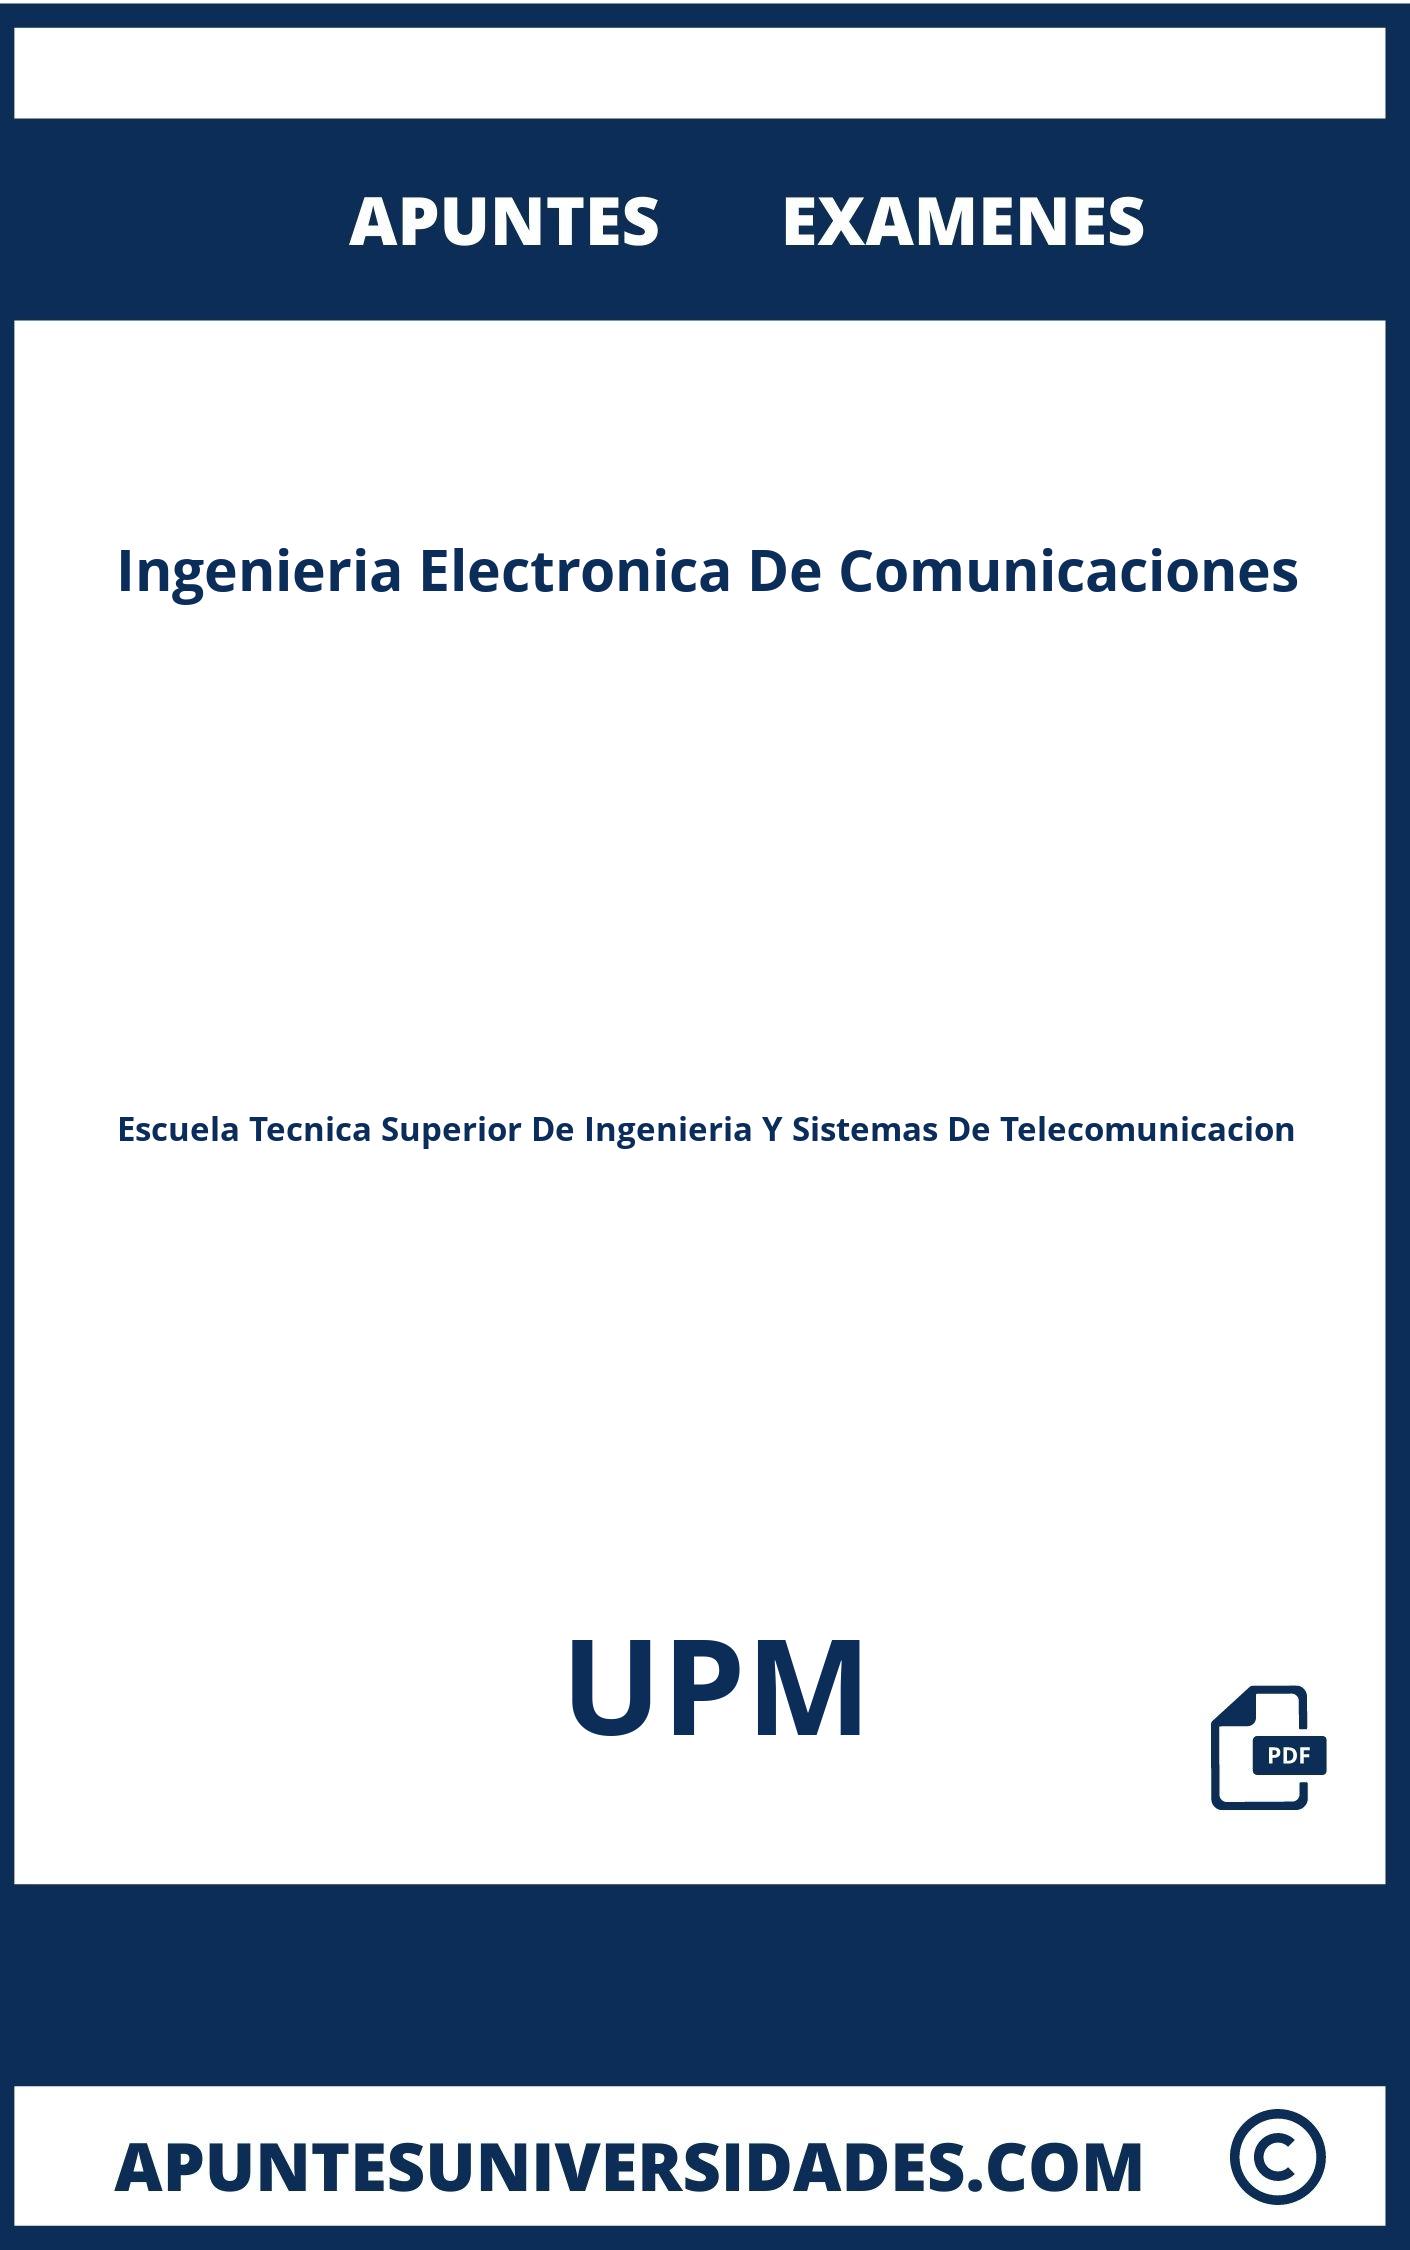 Apuntes Ingenieria Electronica De Comunicaciones UPM y Examenes